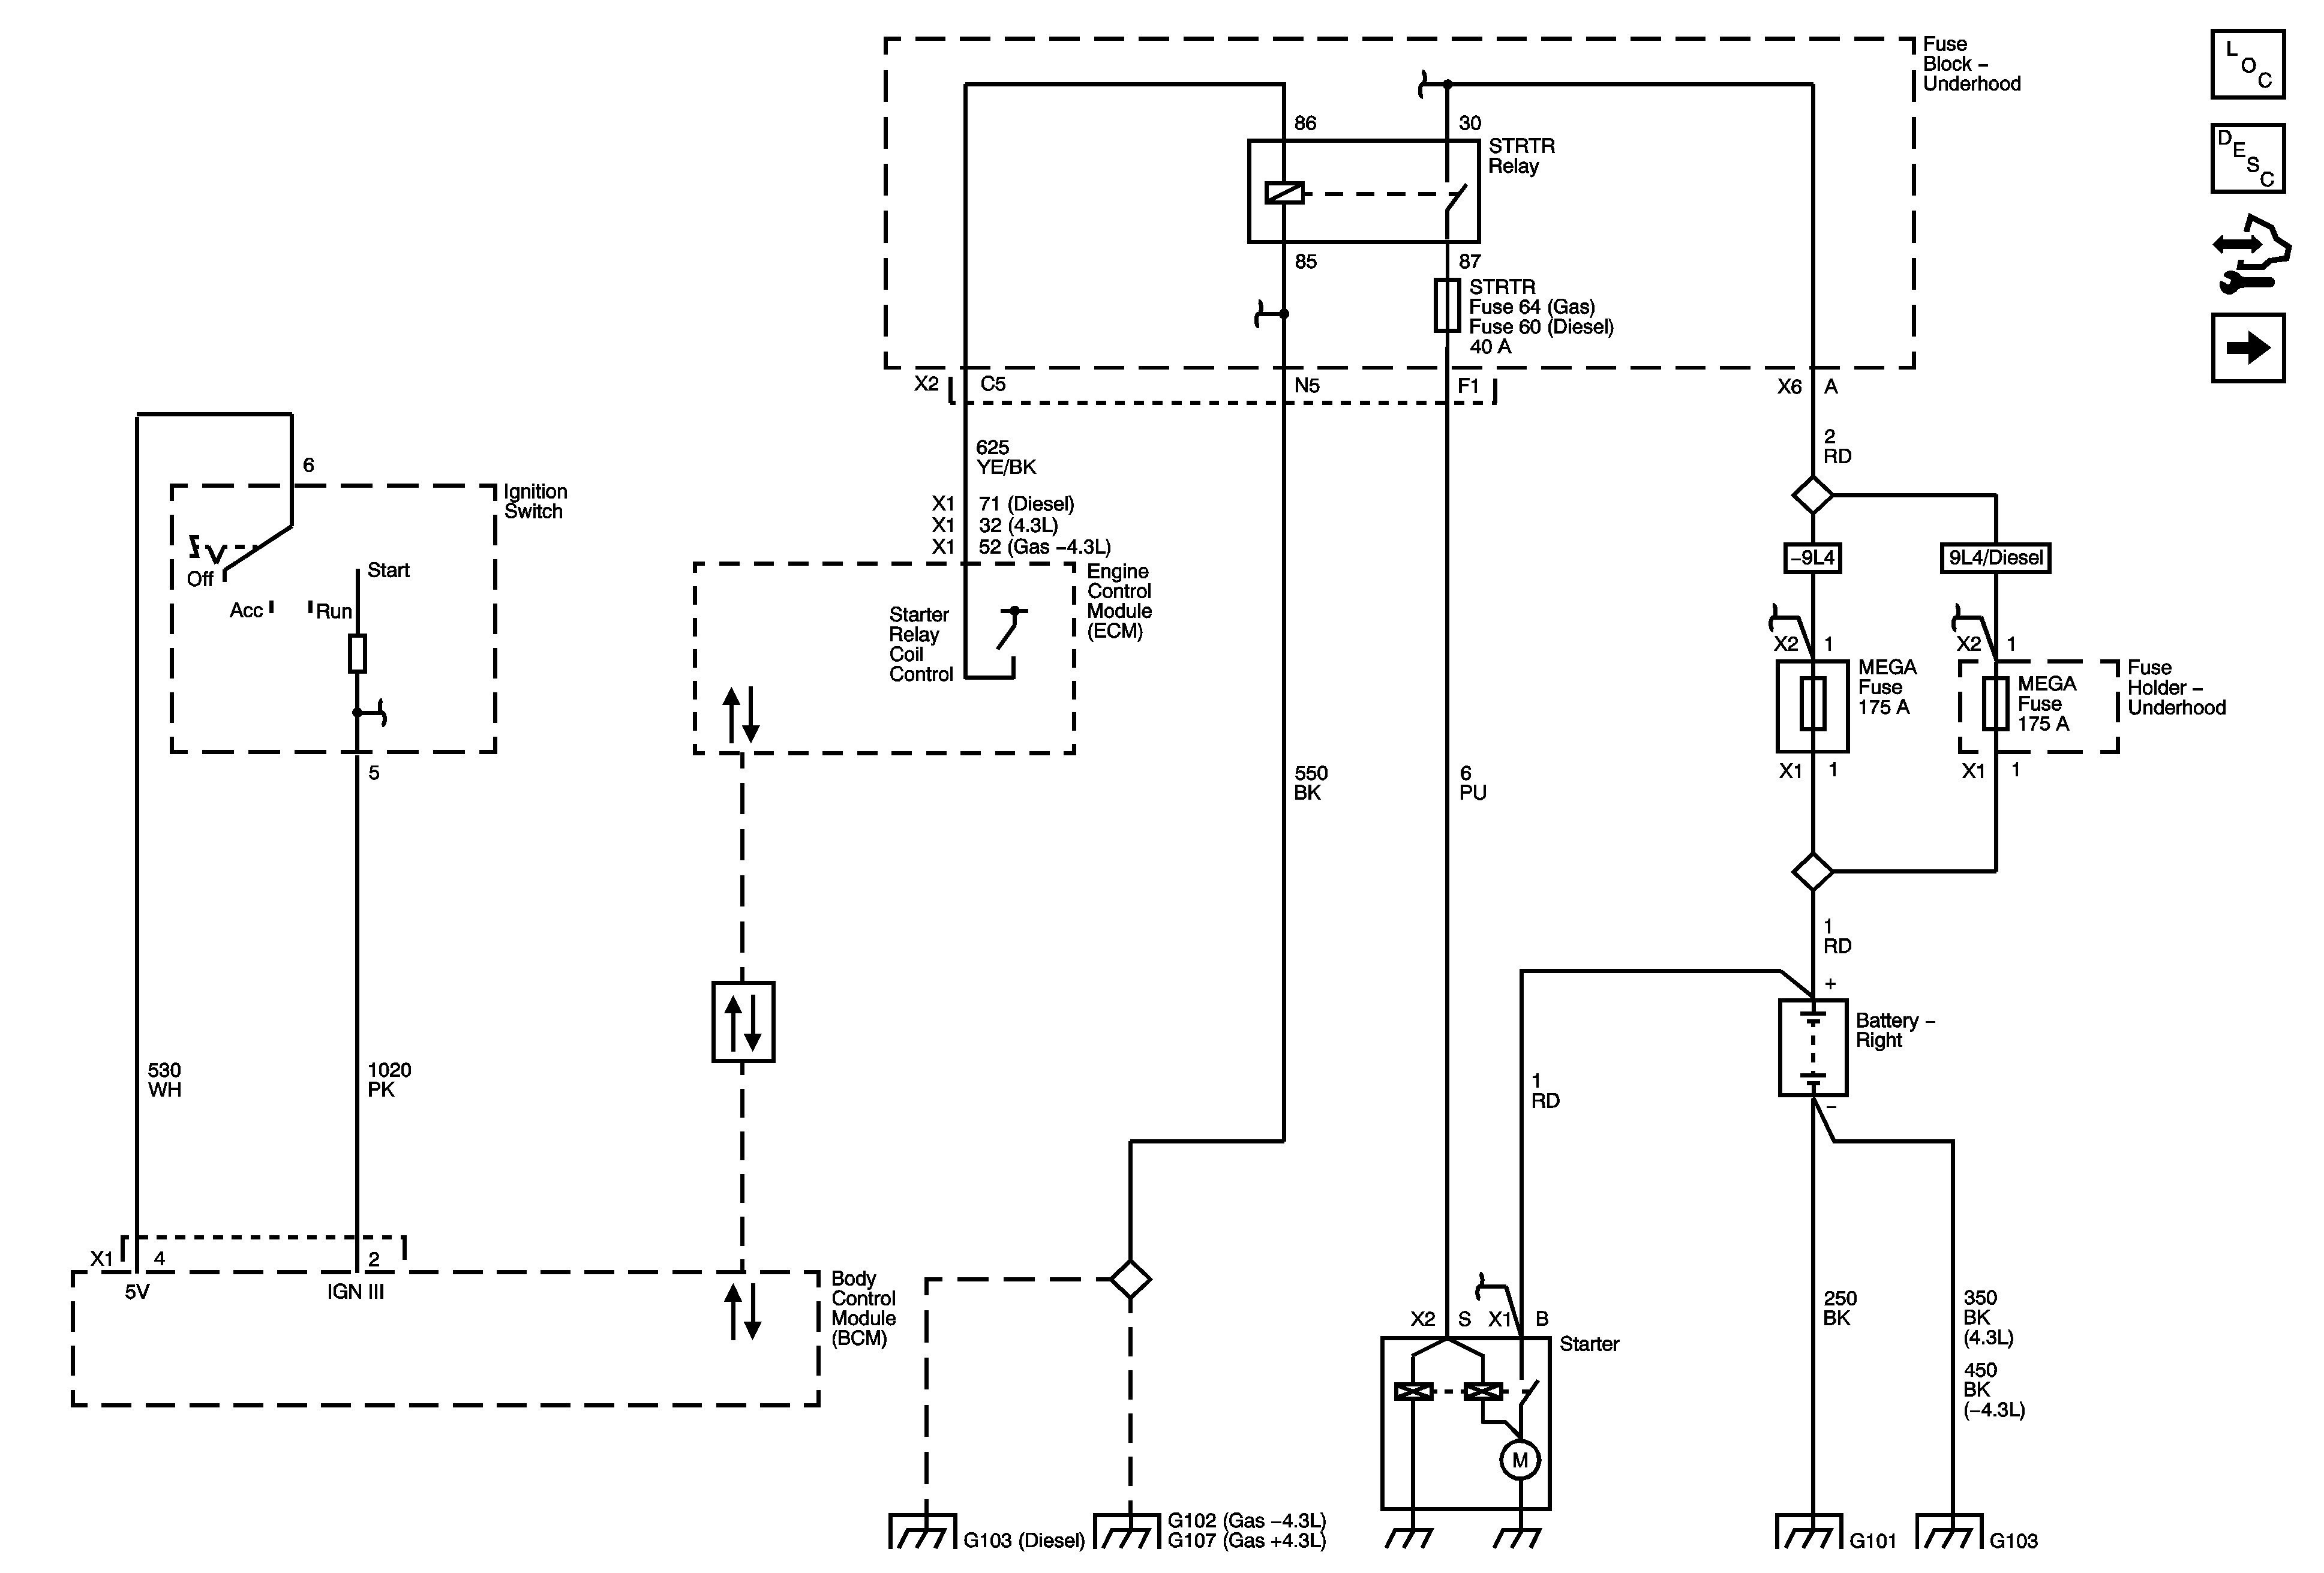 Wiring Diagram for Motor Starter Save Wiring Diagram Car Starter Motor Valid Wiring Diagram for Car